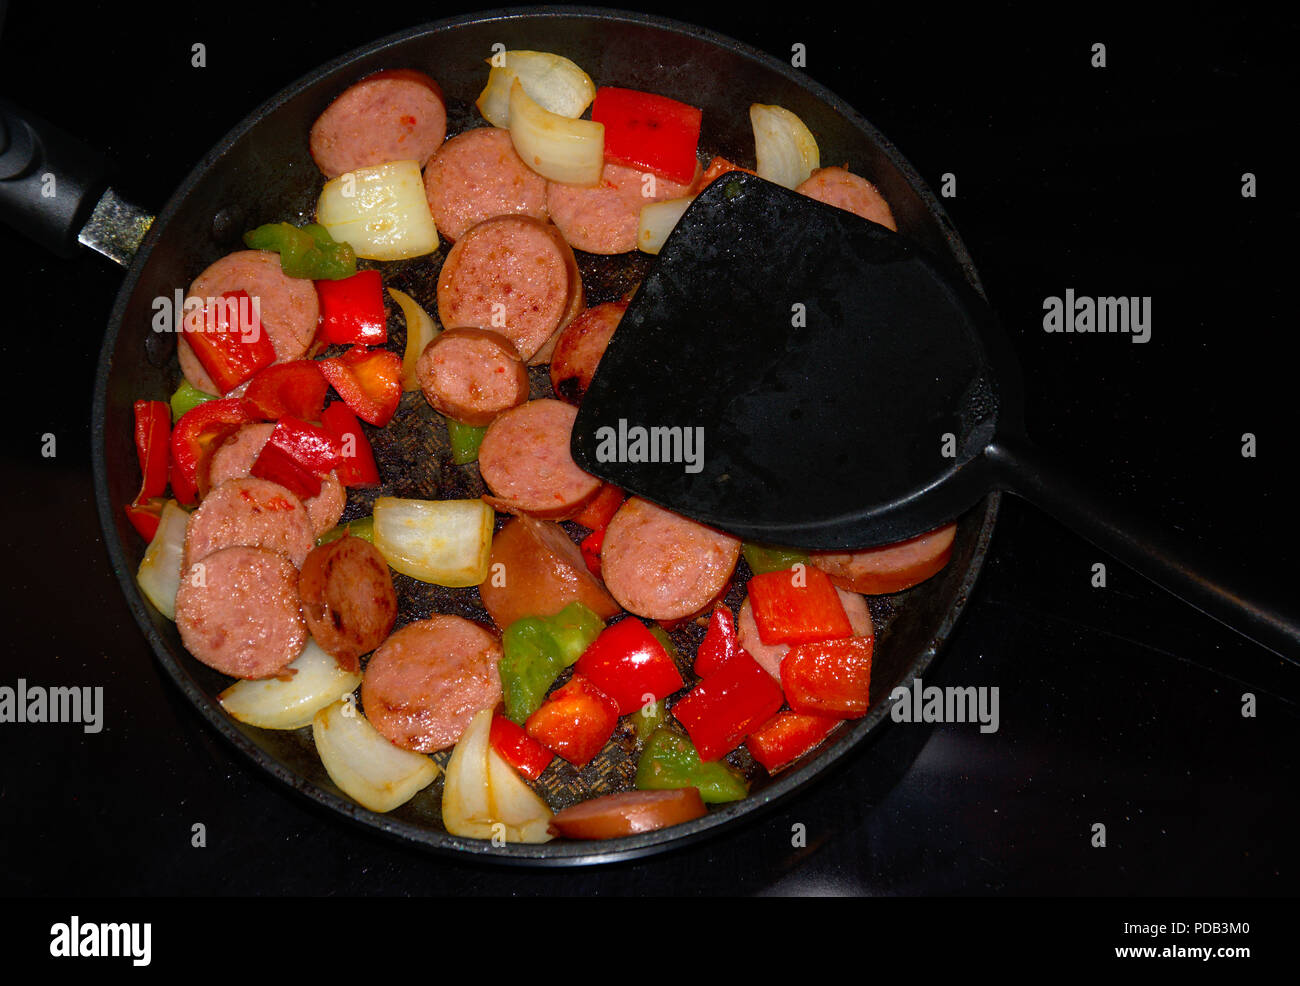 Rühren braten Essen im Topf auf dem Herd mit grünem, rotem Paprika,  Zwiebeln und geräucherte Wurst Stockfotografie - Alamy